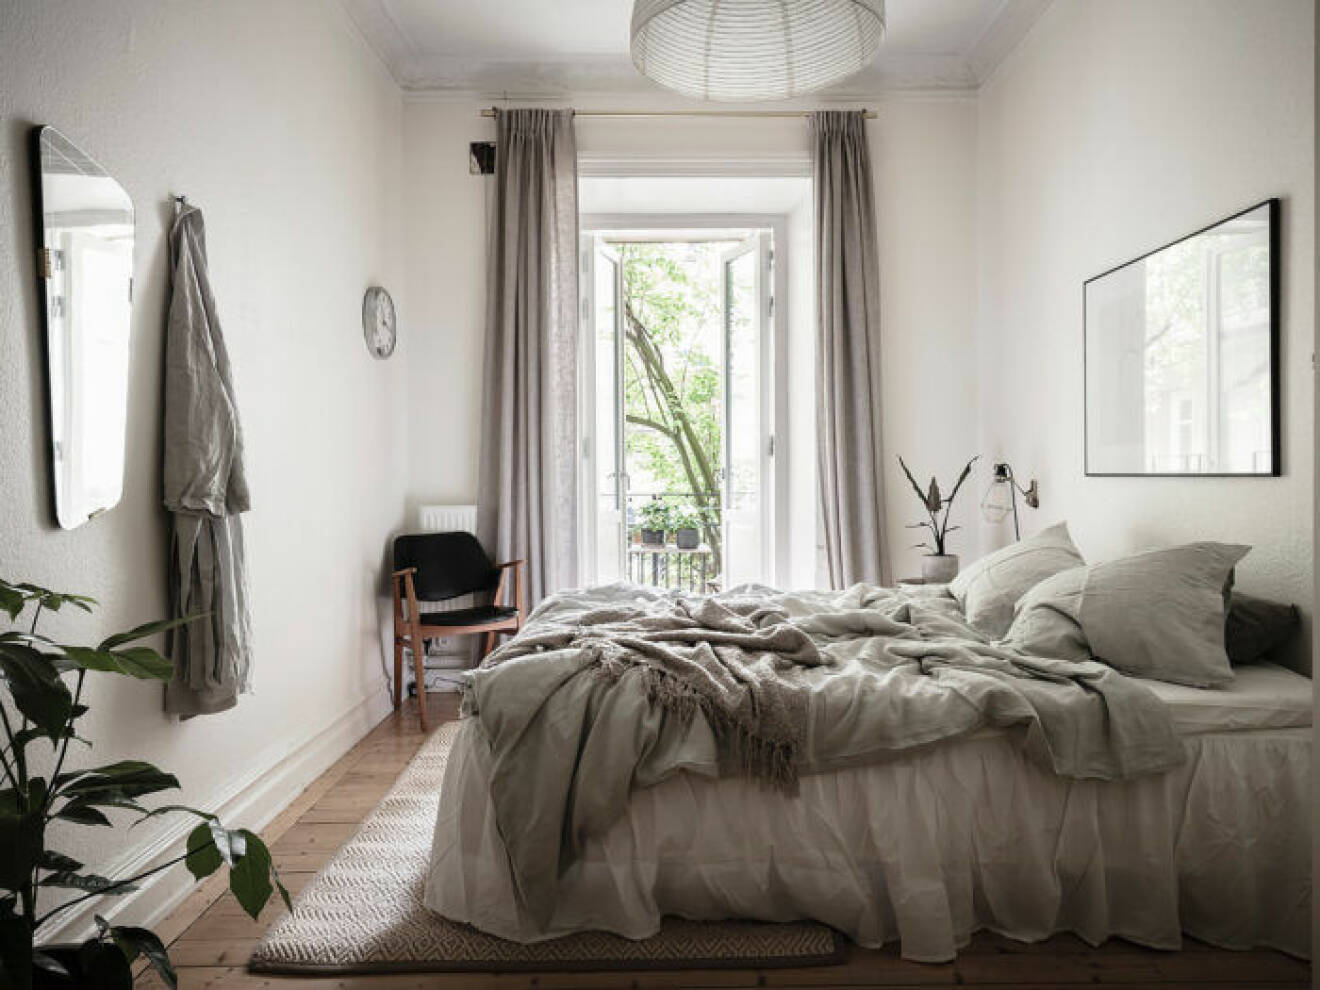 En väggklocka på sovrumsväggen kan bidra till mindre skärmtid i sovrummet